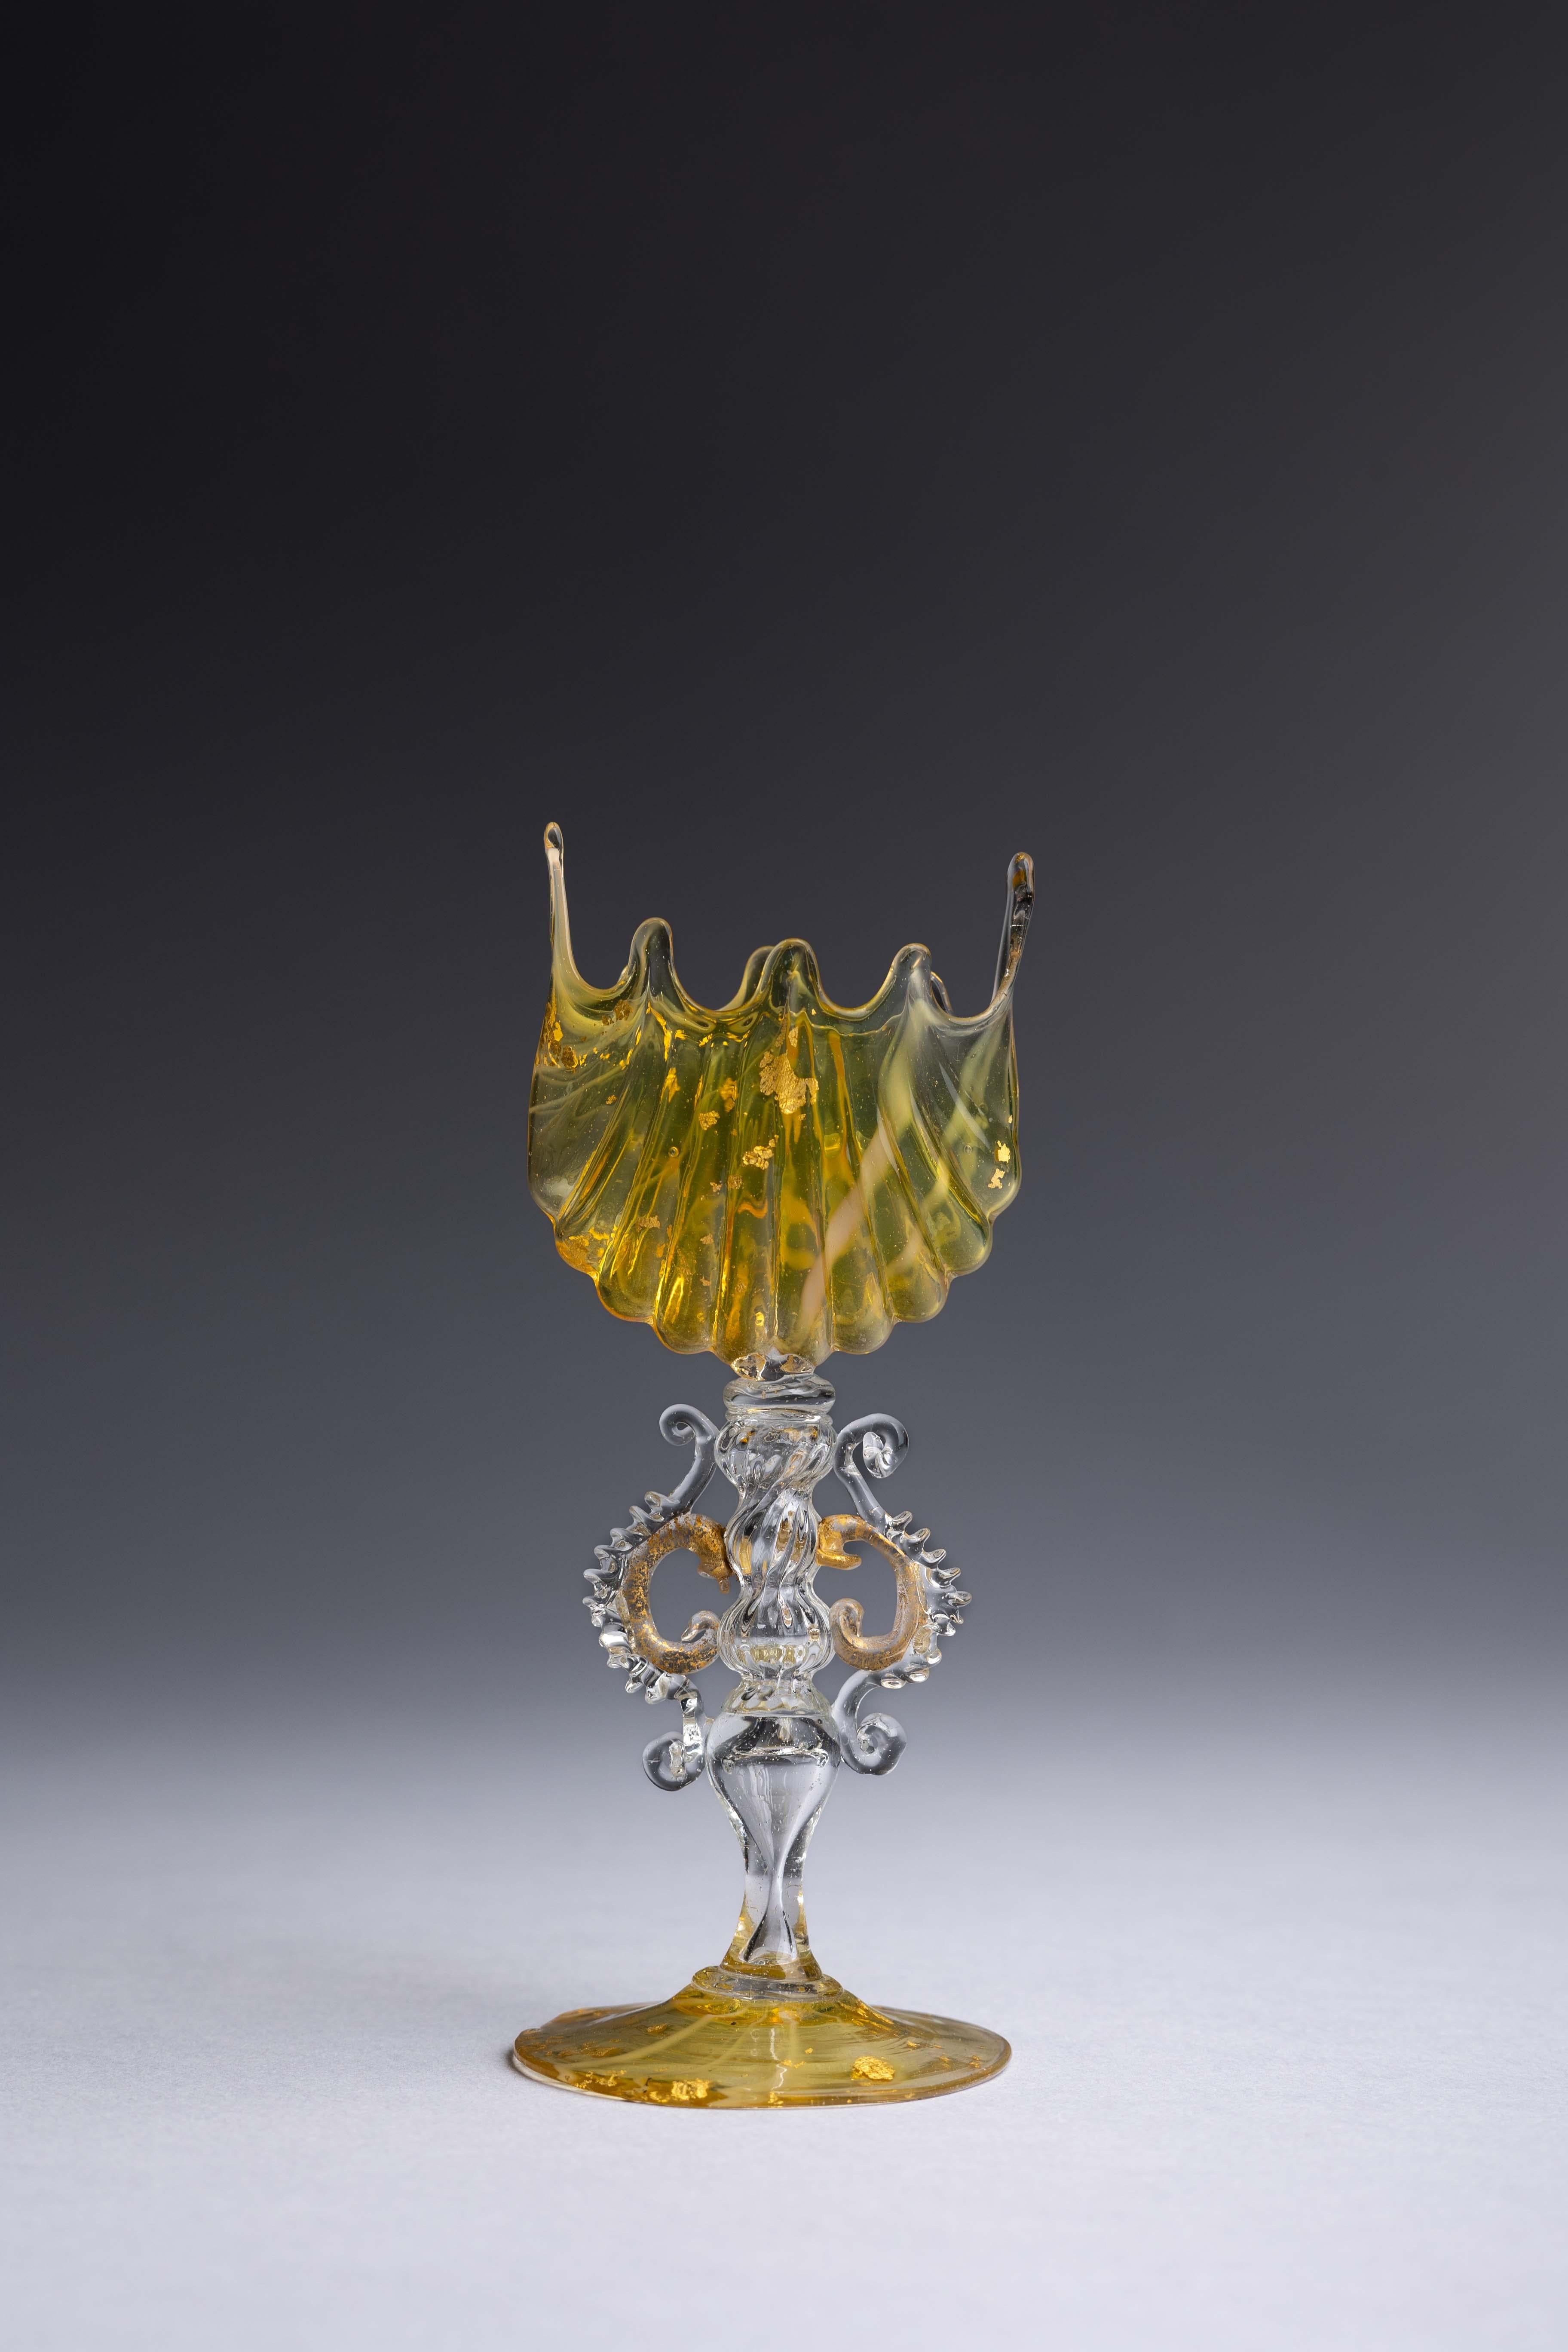 Ein Miniaturpokal aus Murano-Glas, hergestellt von den Glasmeistern Salviati & Co im späten 19. Jahrhundert, aus gelbem und klarem Glas mit Goldflecken, die zu einer unglaublich komplizierten Form gedreht wurden.

Im späten 19. Jahrhundert